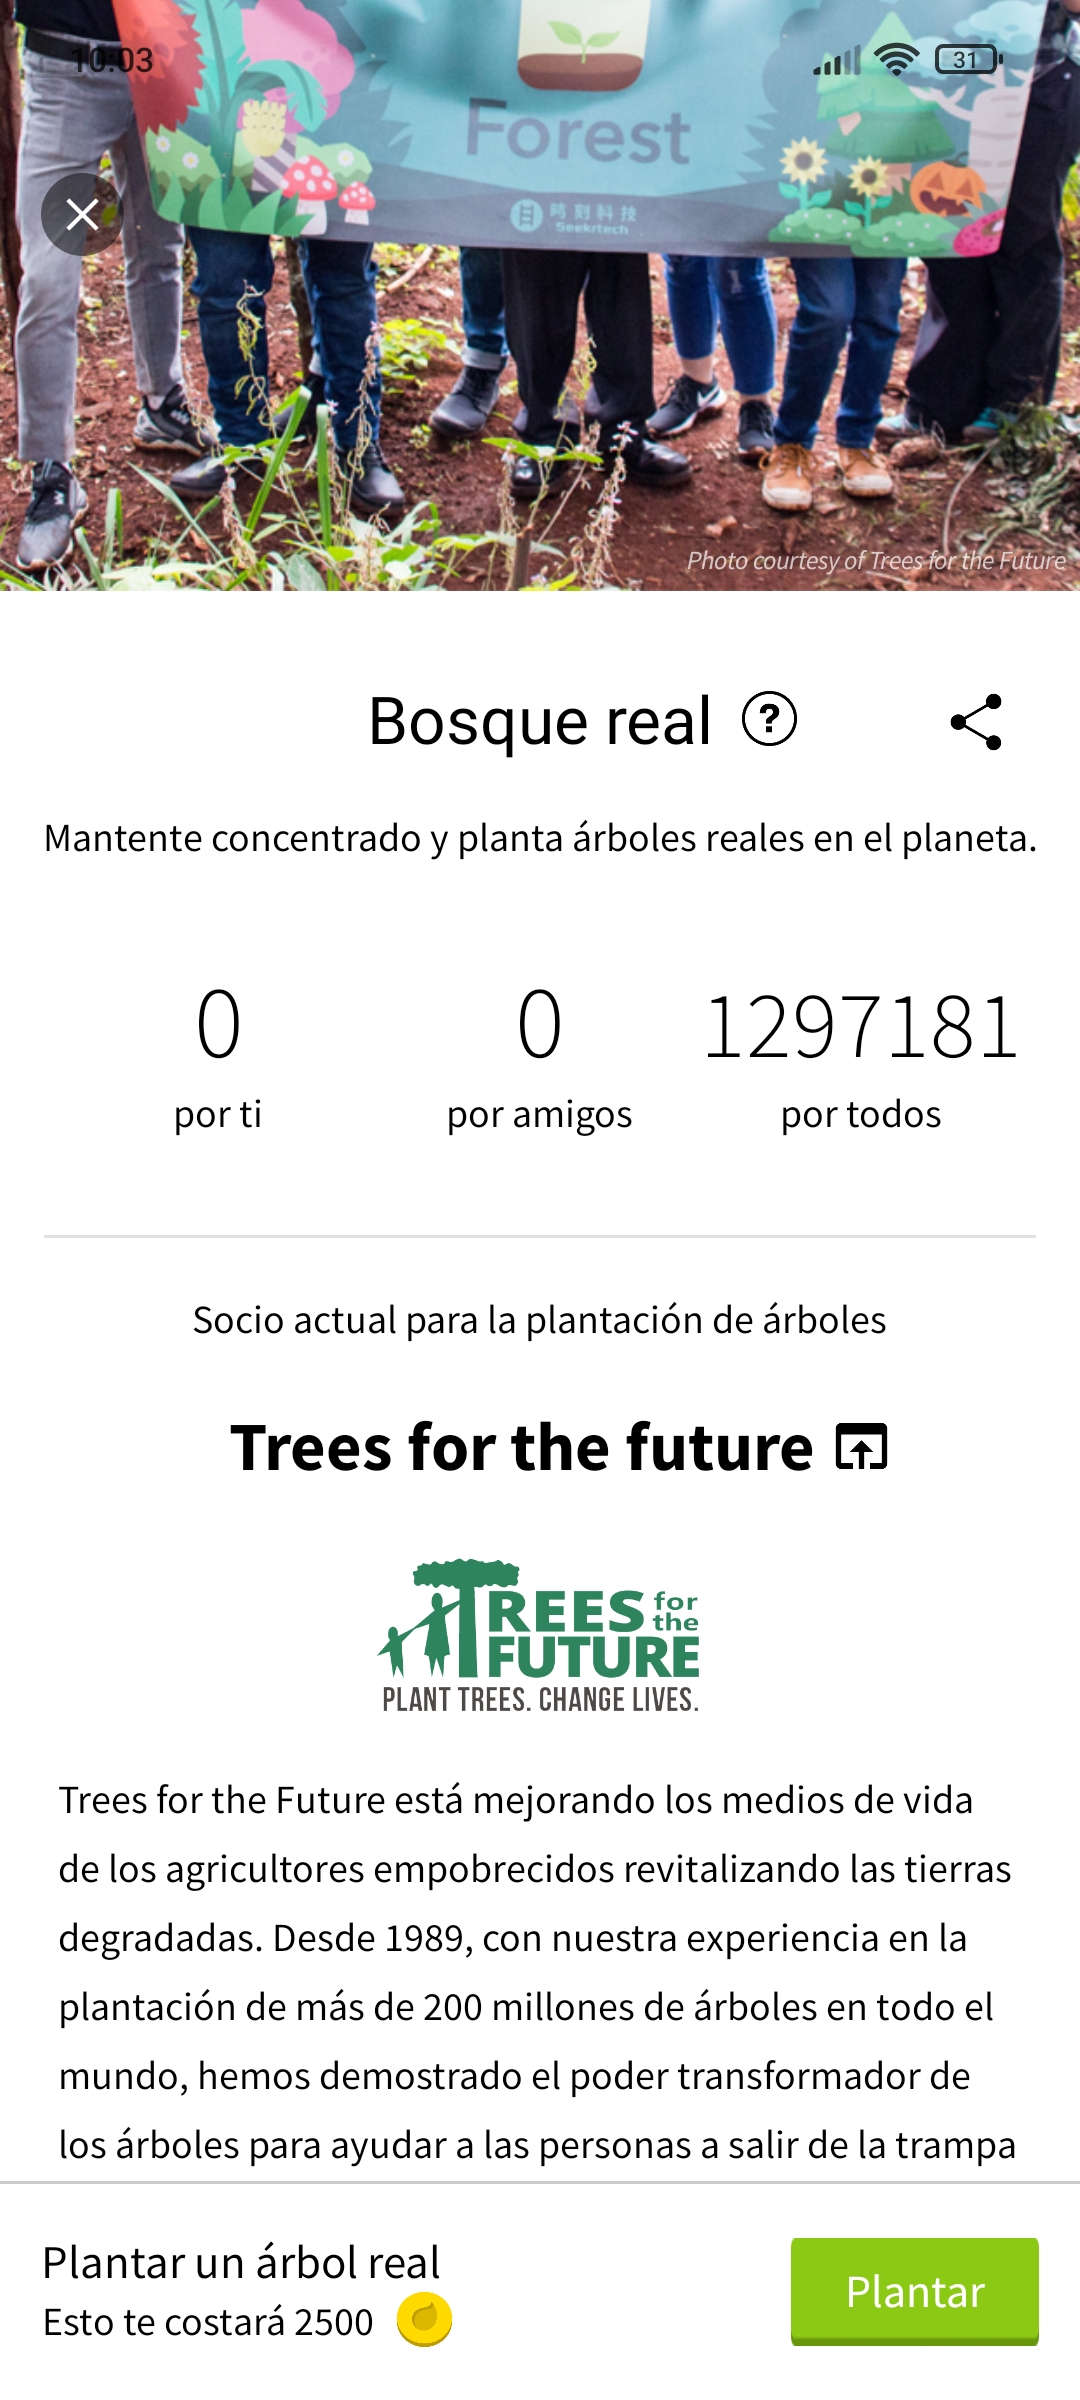 Imagen que muestra la sección de bosque real donde podemos plantar un árbol real a cambio de monedas virtuales. Además, también aprece una breve explicación del acuerdo con la organizaxión Trees for the Future.